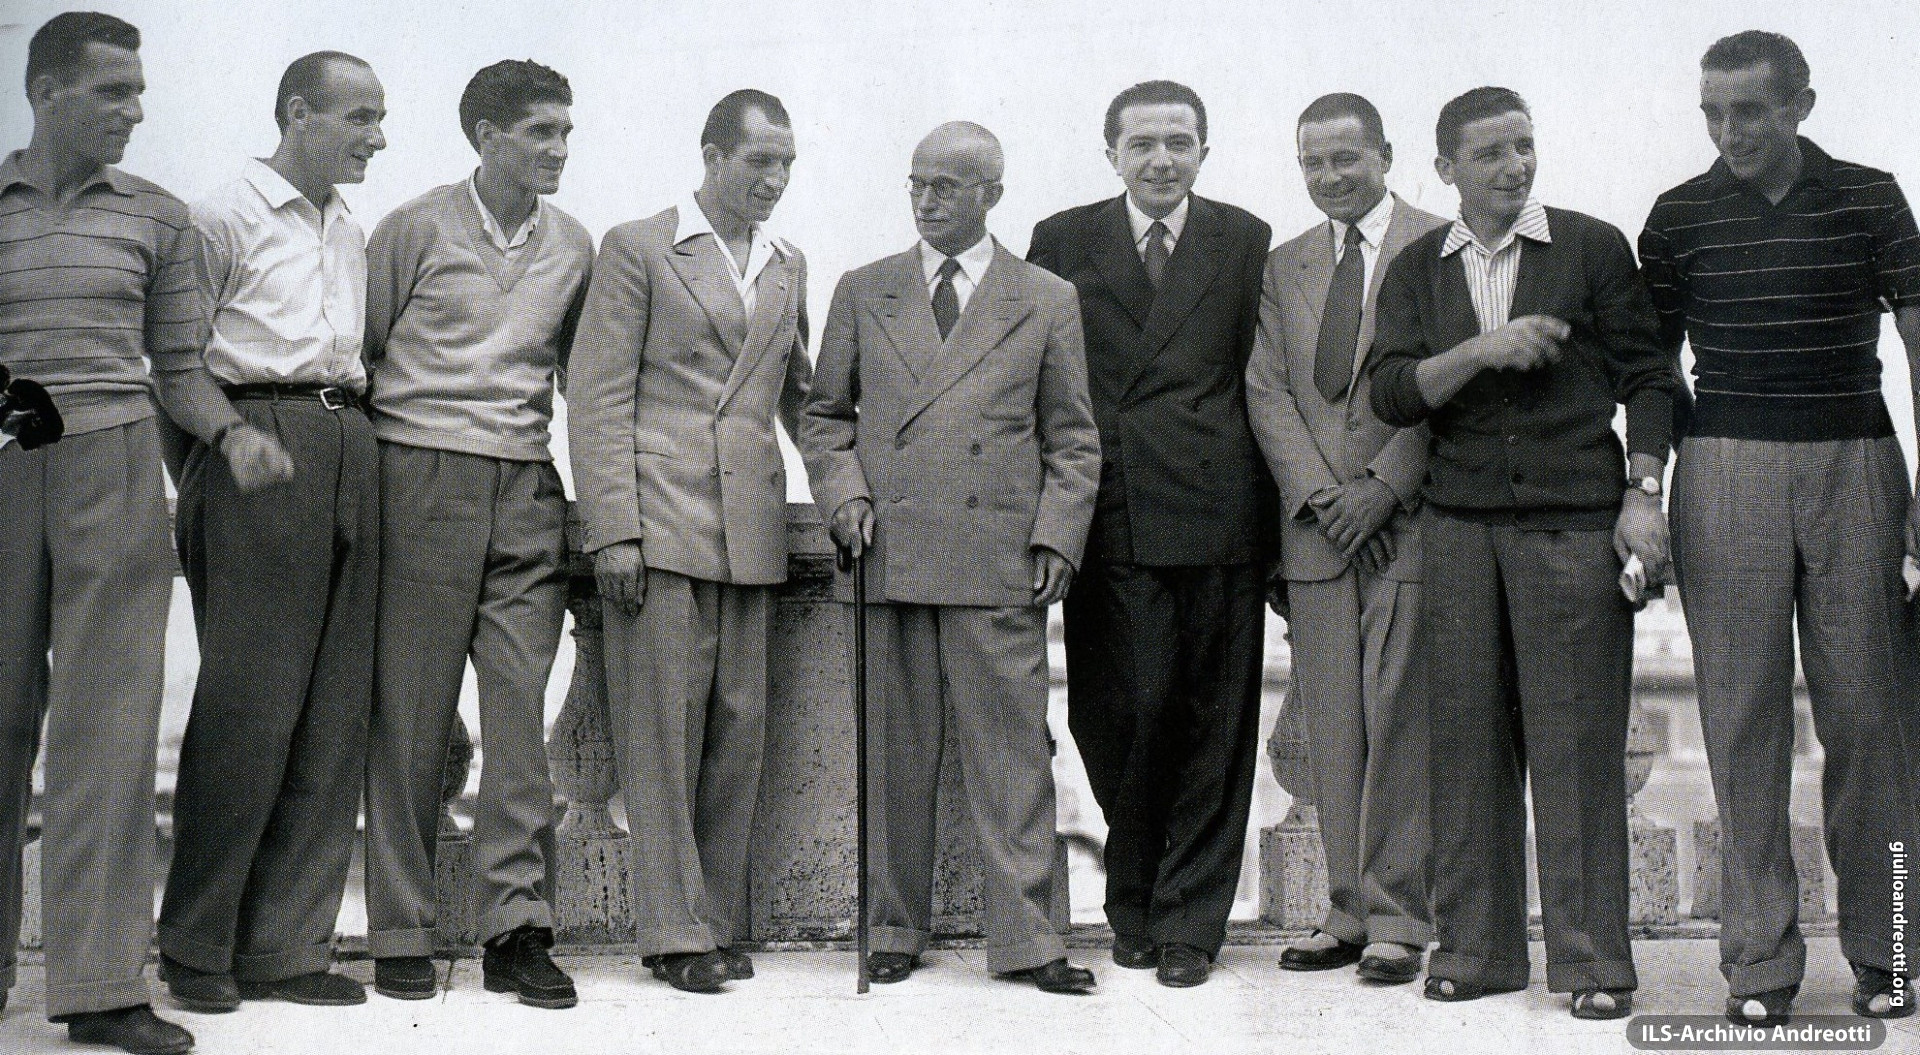 Luglio 1948, Gino Bartali e la sua squadra, accompagnati da Andreotti, ricevuti in Quirinale dal Presidente Einaudi dopo la vittoria al Tour de France.. Alla sinistra di Andreotti, Alfredo Binda, commissario tecnico.